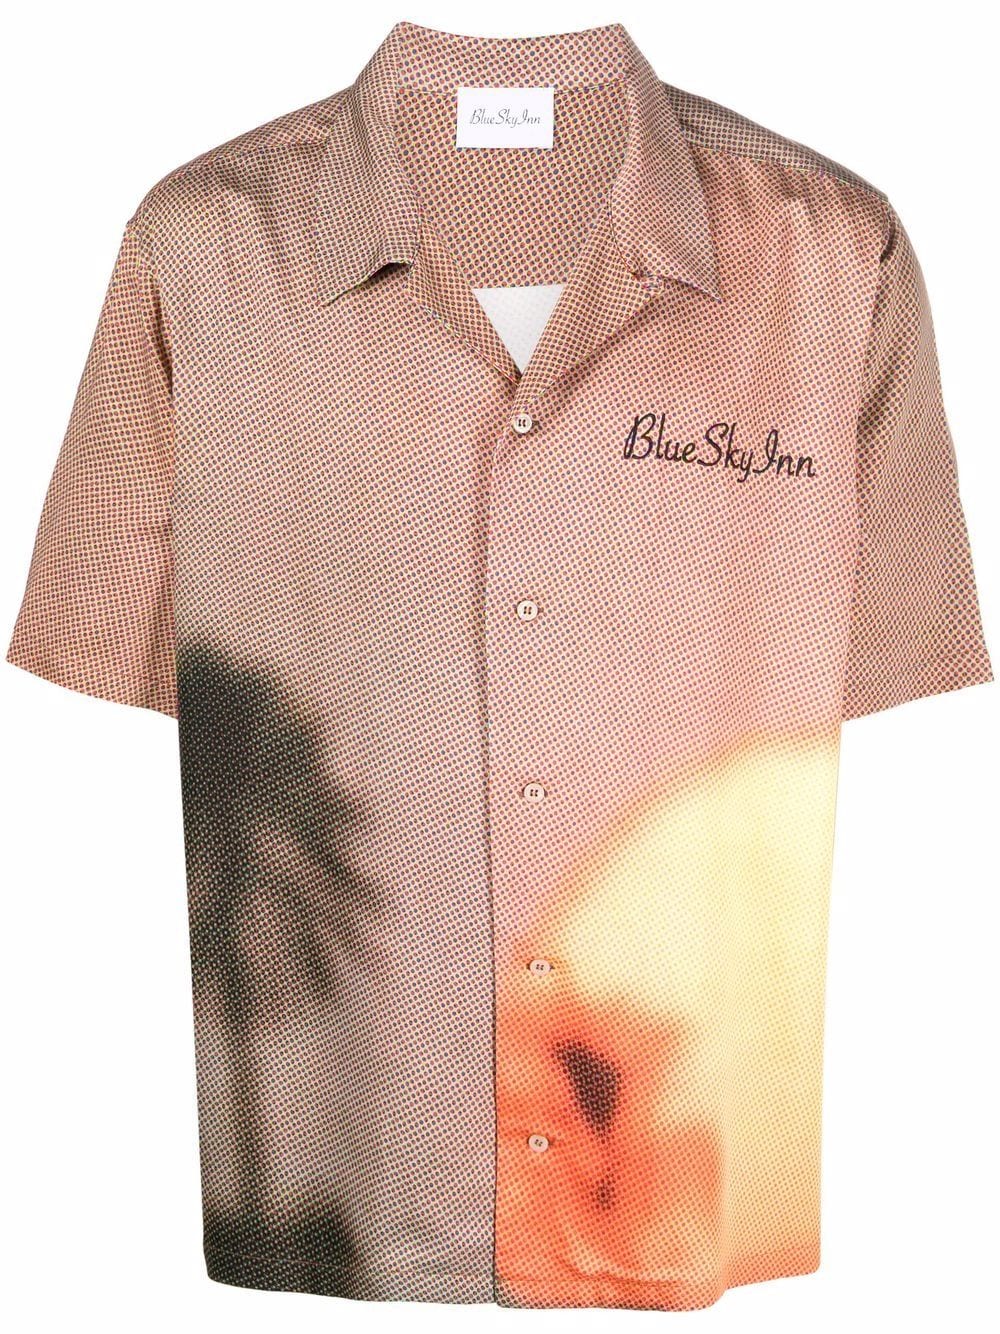 фото Blue sky inn рубашка с короткими рукавами и абстрактным принтом